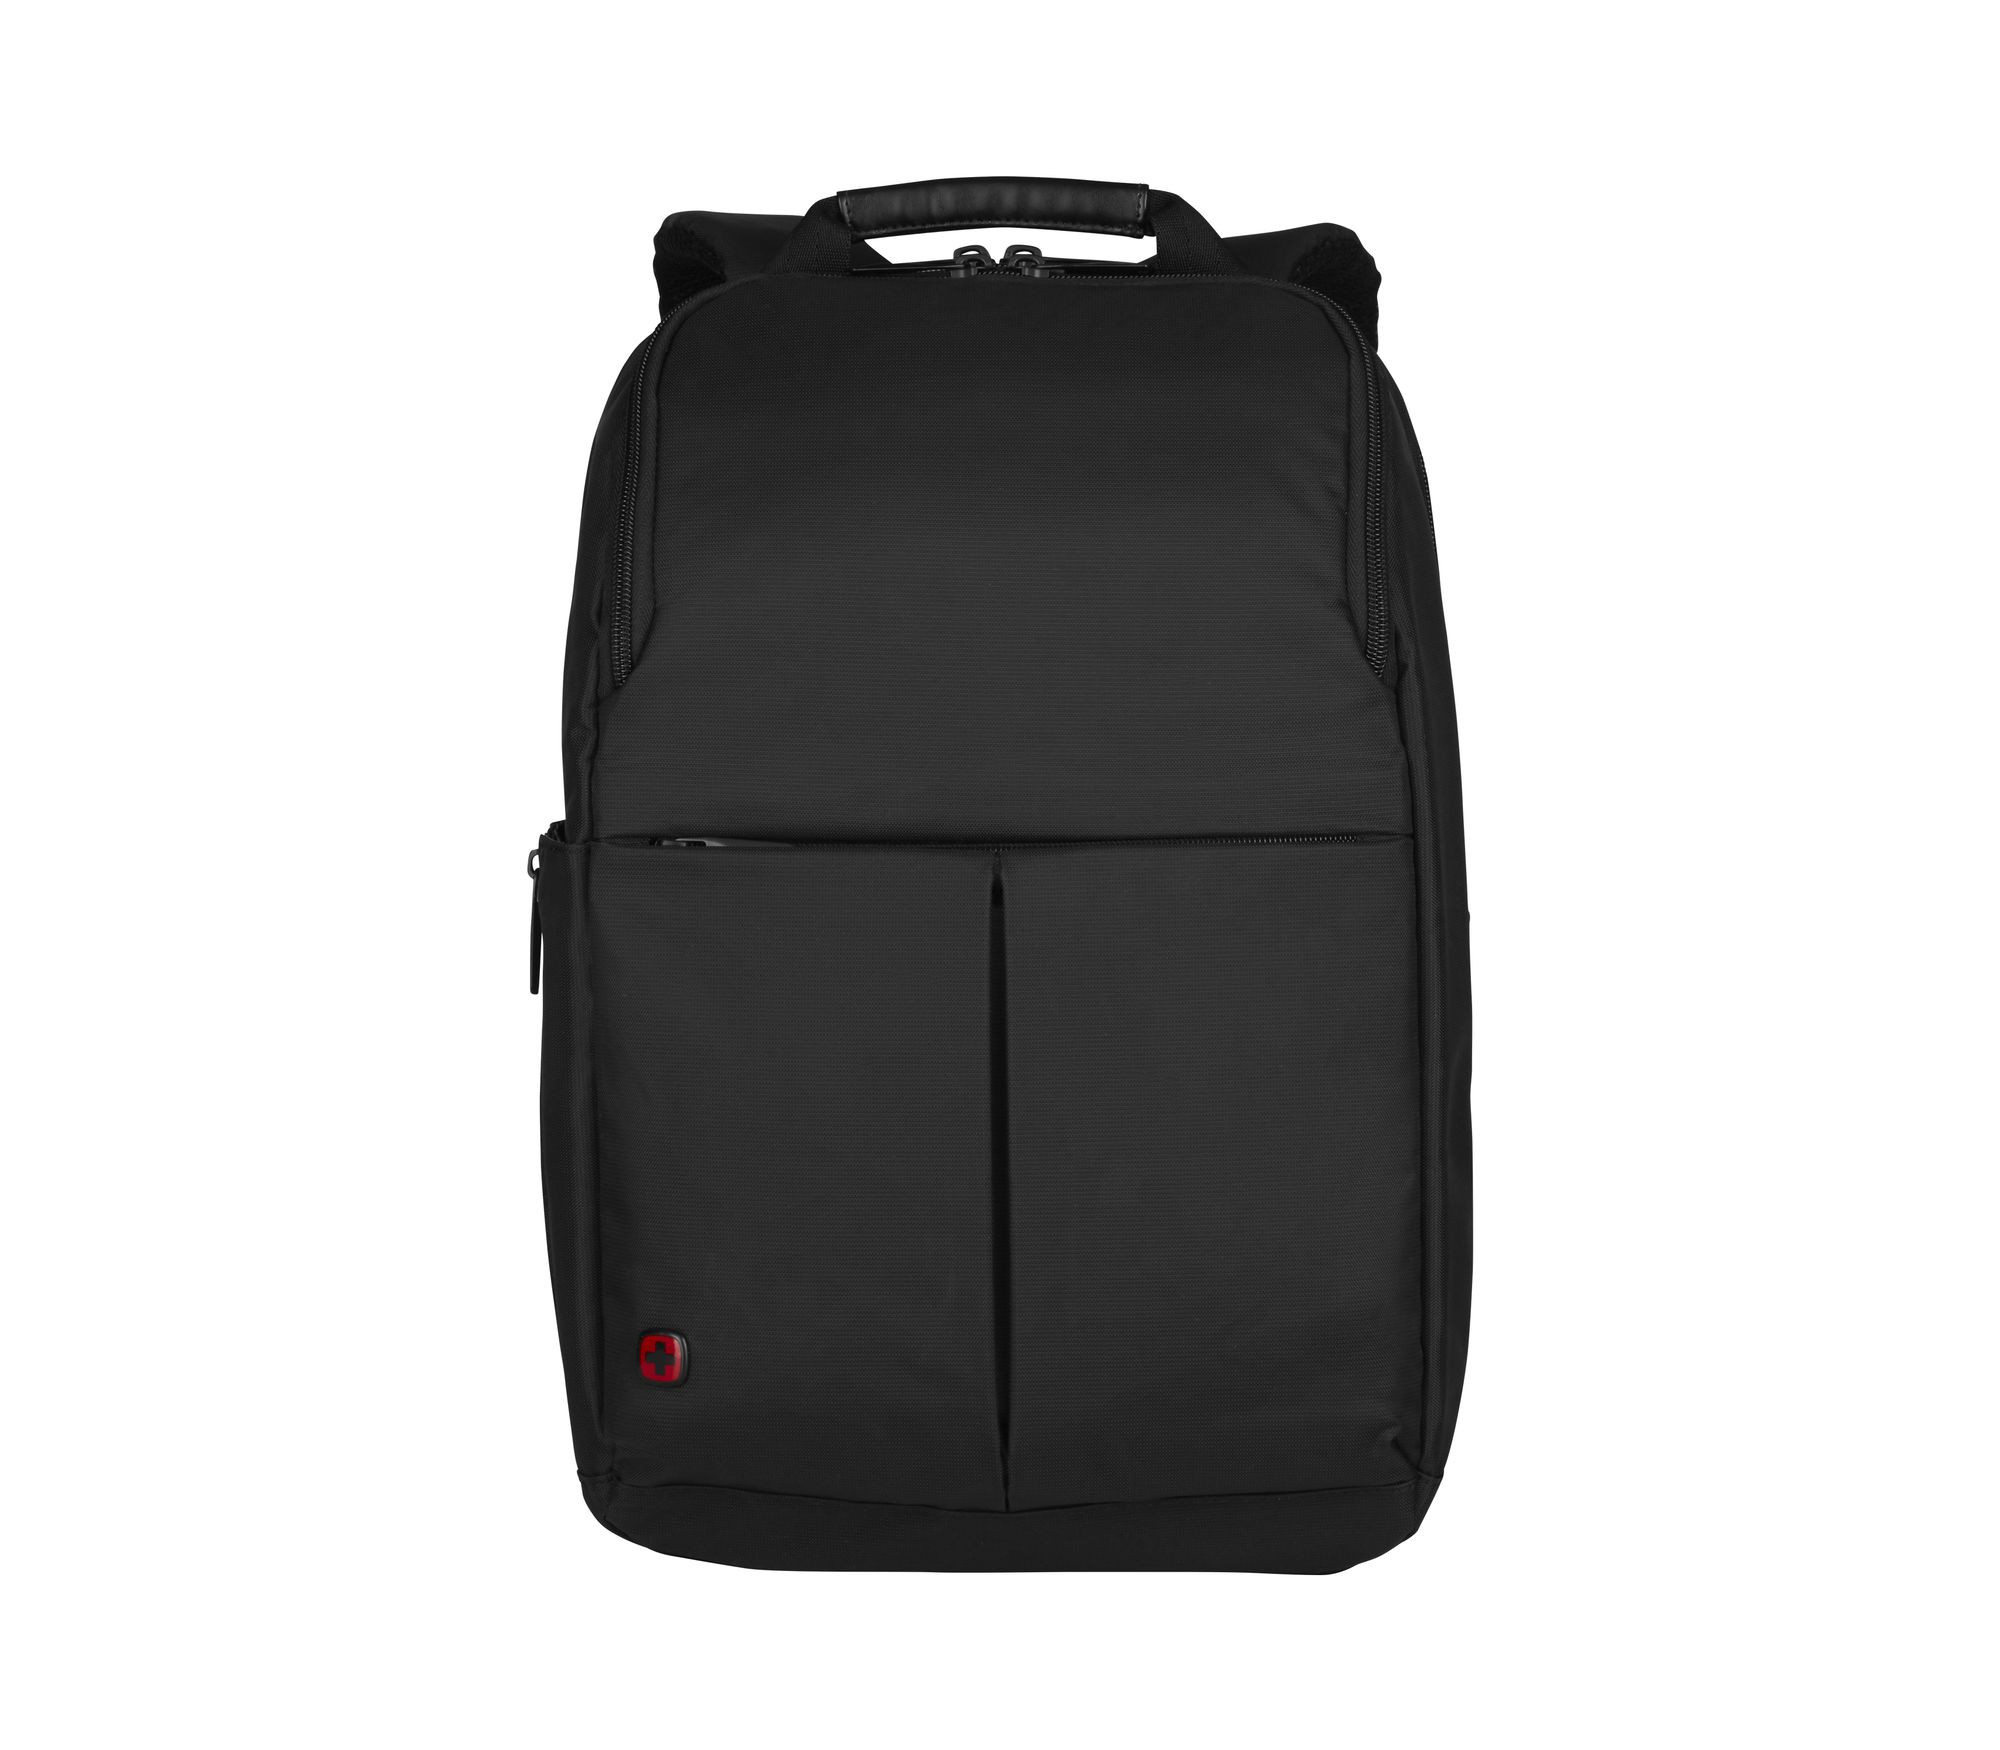 14" Laptop Backpack Black - Wenger